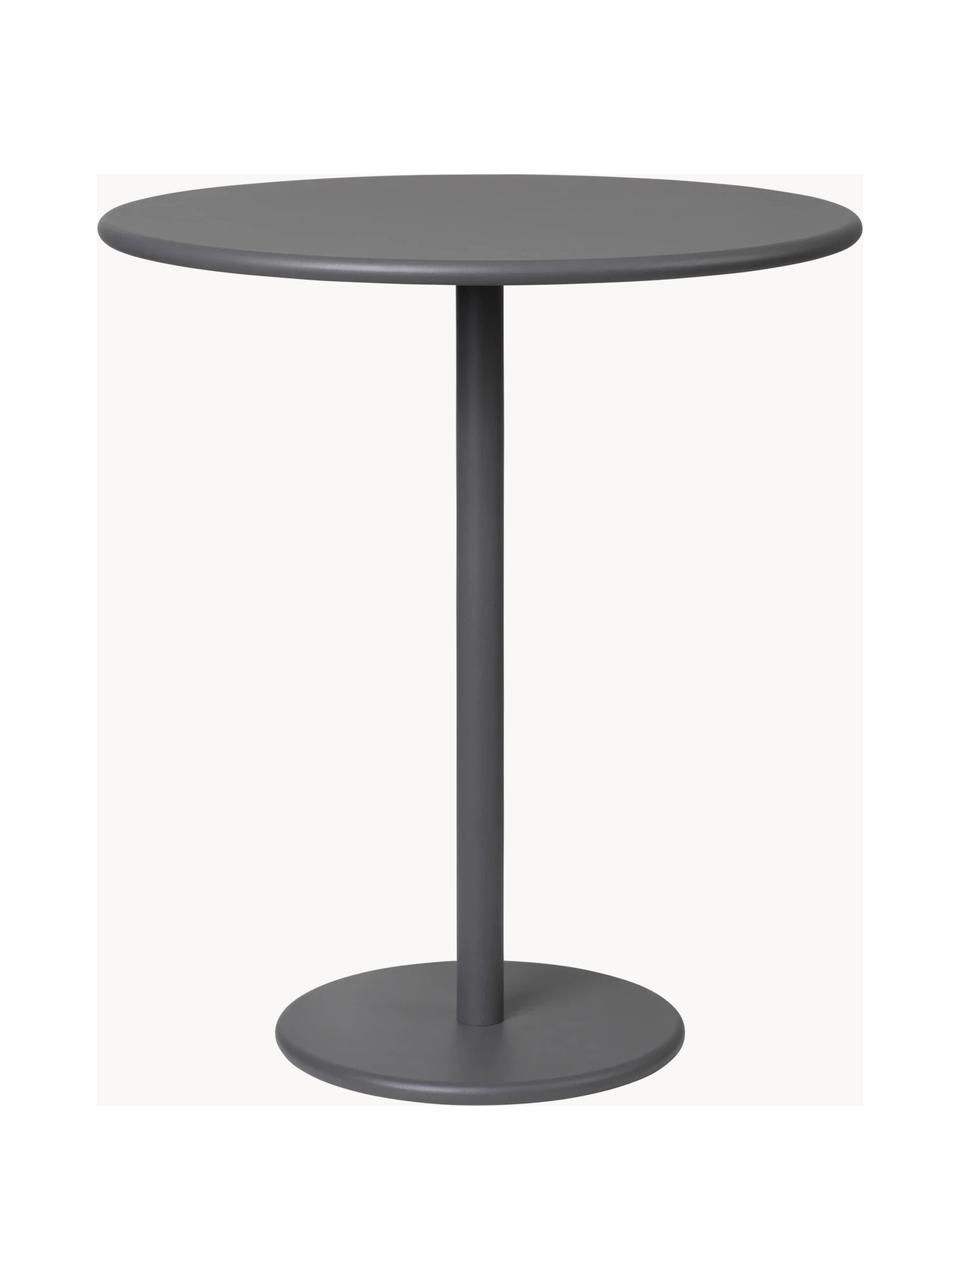 Table d'appoint ronde de jardin Stay, Aluminium, revêtement par poudre, Anthracite, Ø 40 x haut. 45 cm